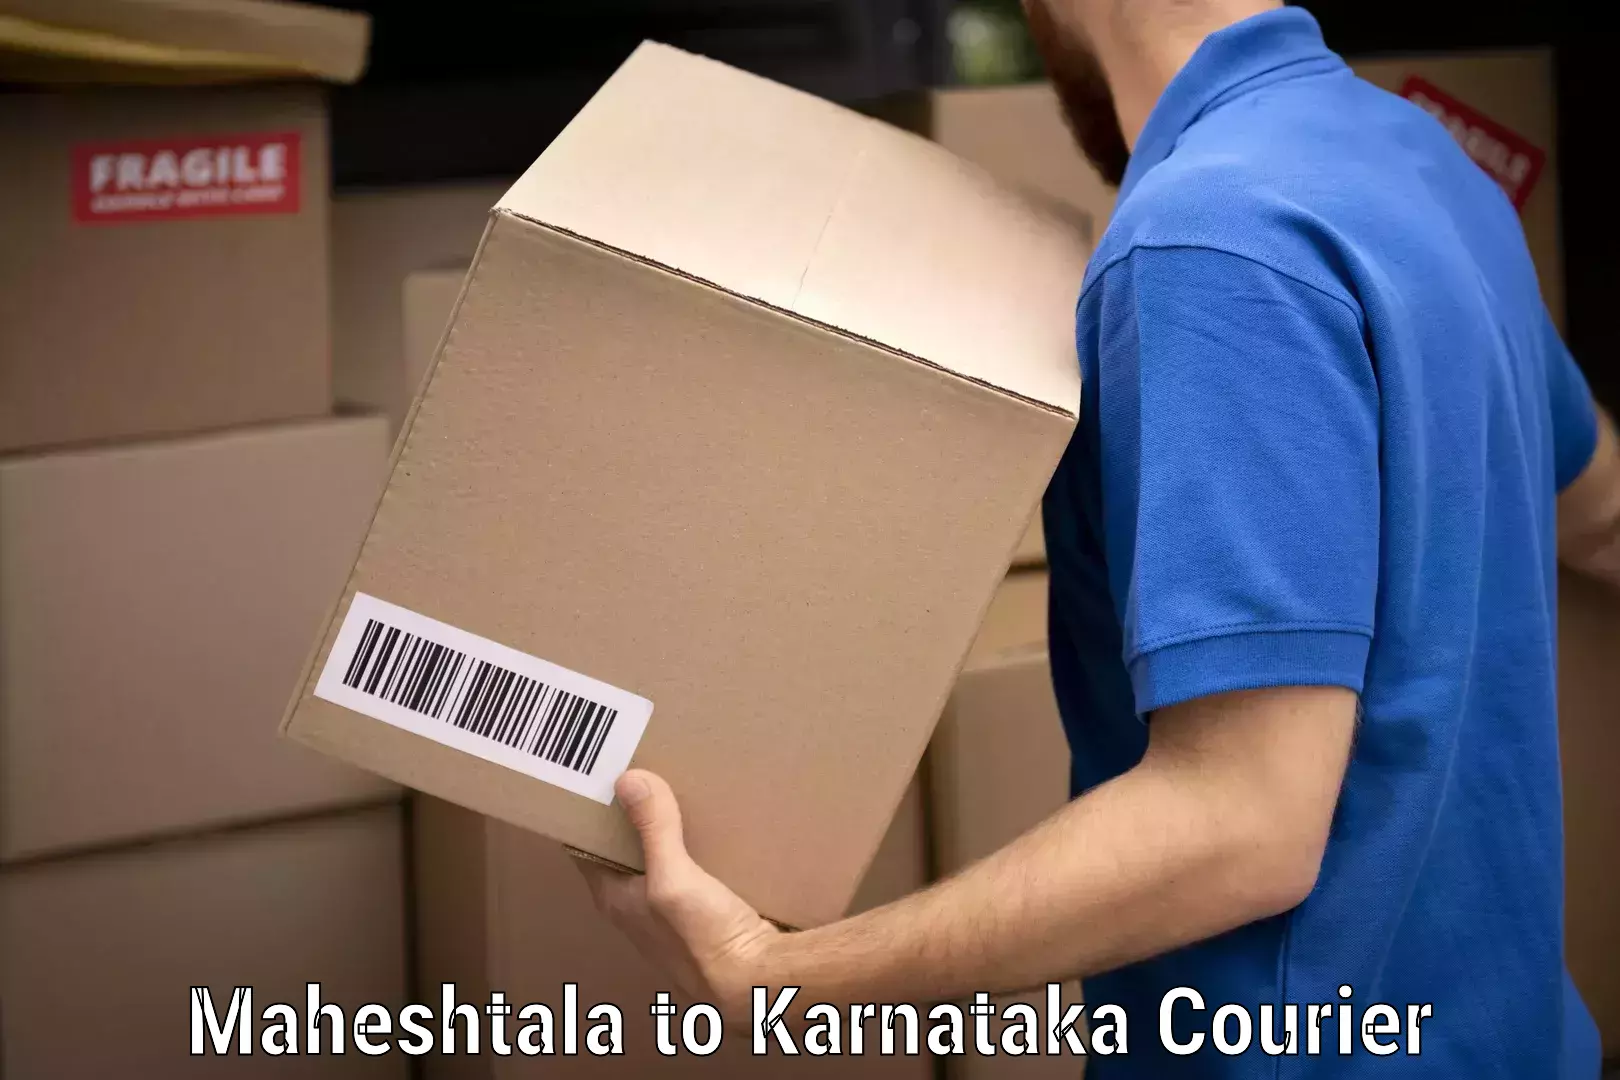 Full-service movers Maheshtala to Karnataka